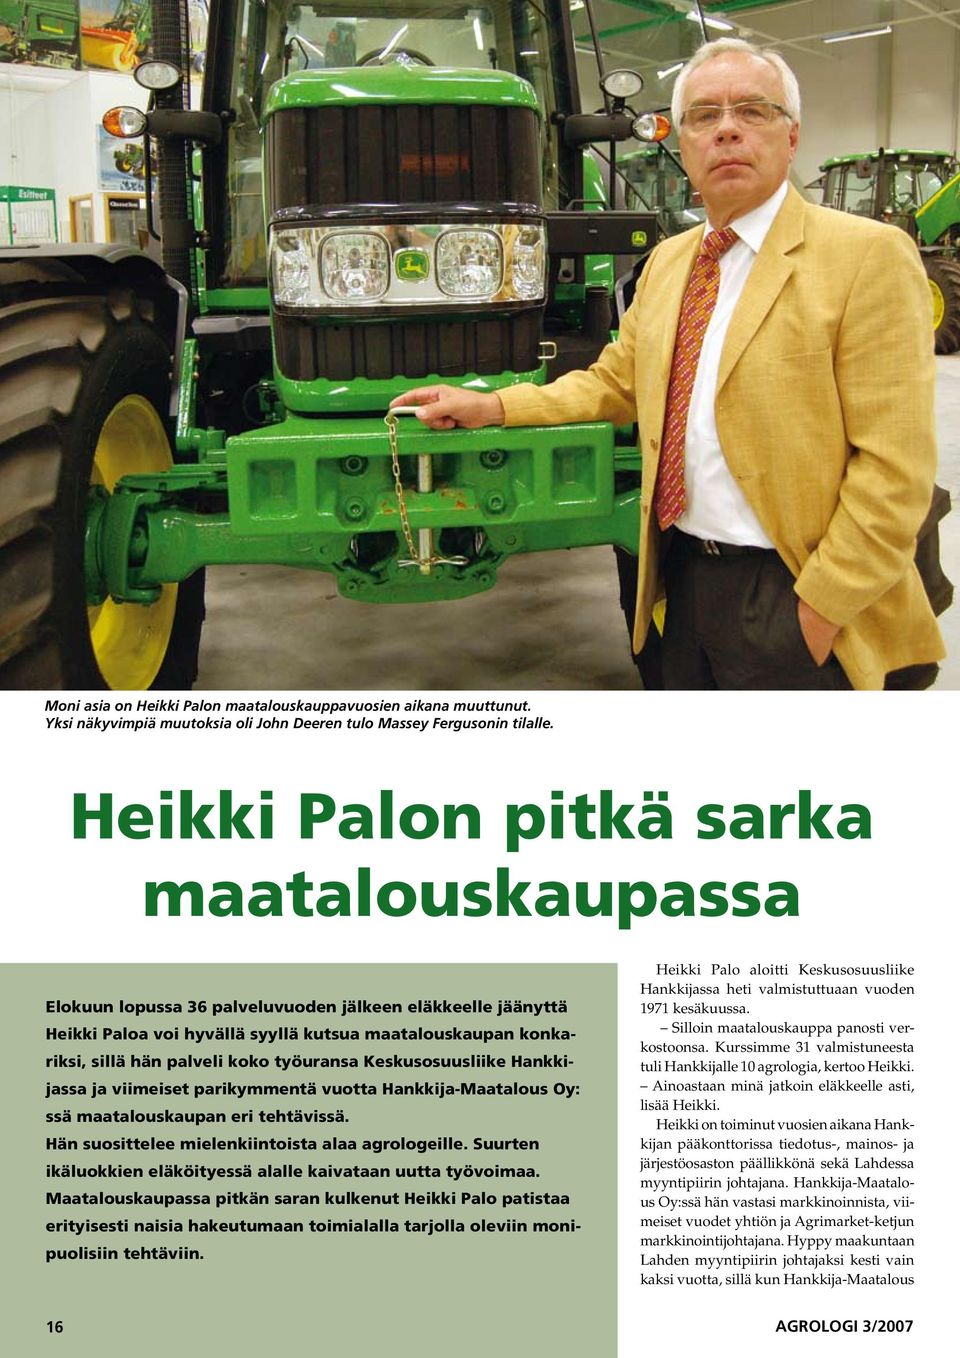 työuransa Keskusosuusliike Hankkijassa ja viimeiset parikymmentä vuotta Hankkija-Maatalous Oy: ssä maatalouskaupan eri tehtävissä. Hän suosittelee mielenkiintoista alaa agrologeille.